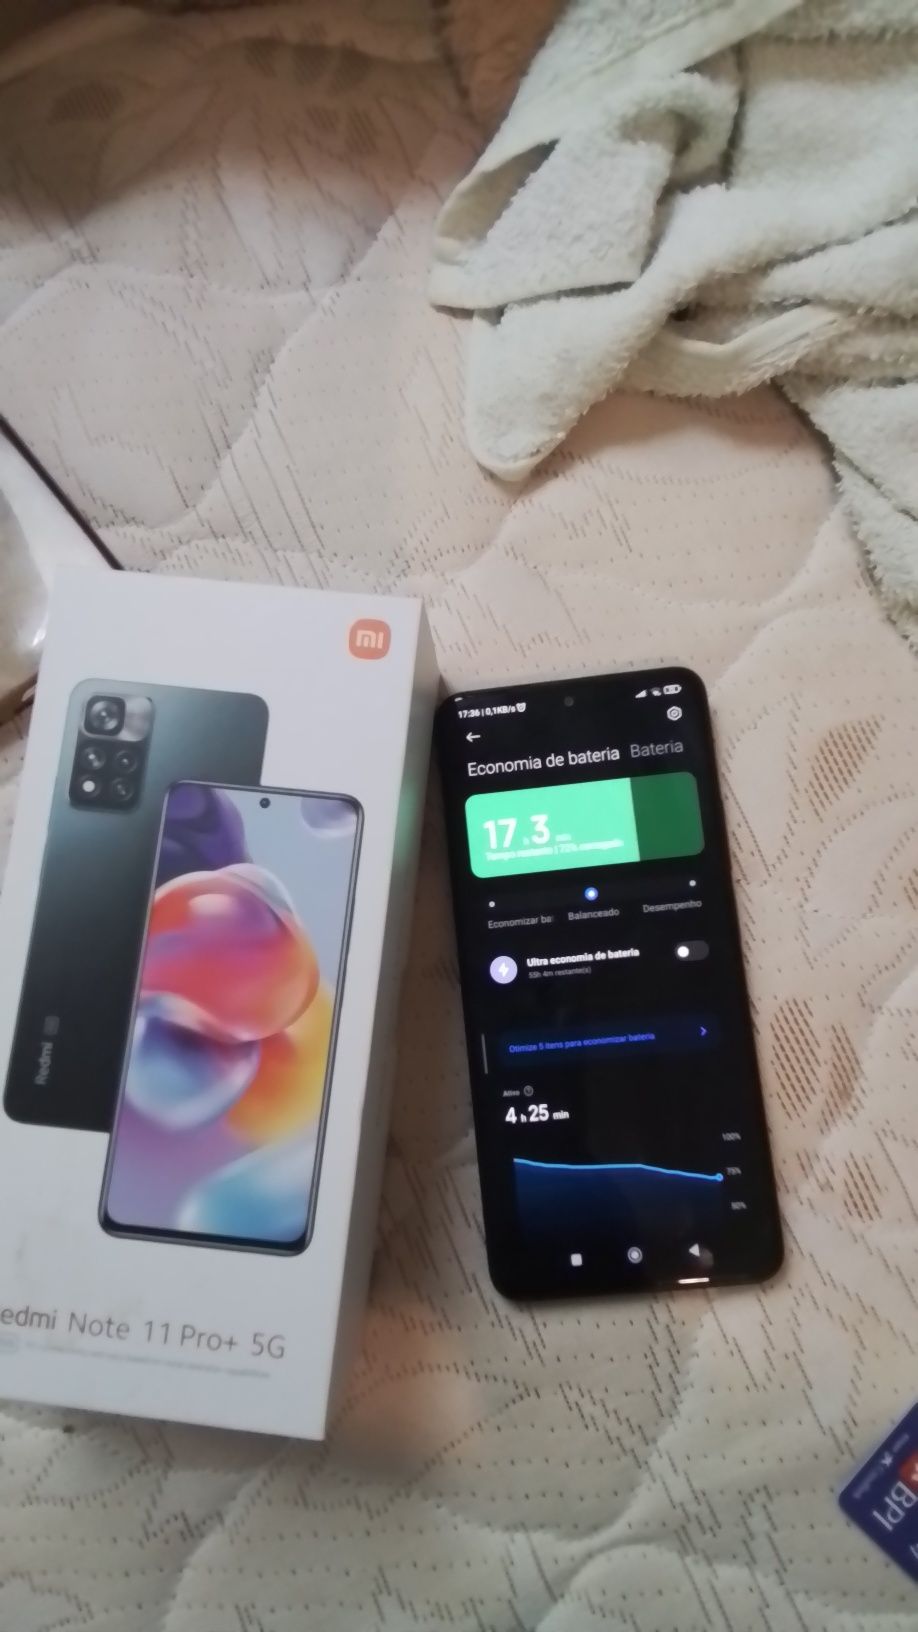 Smartphone Xiomi Redmi Note 11Pro+ 5G